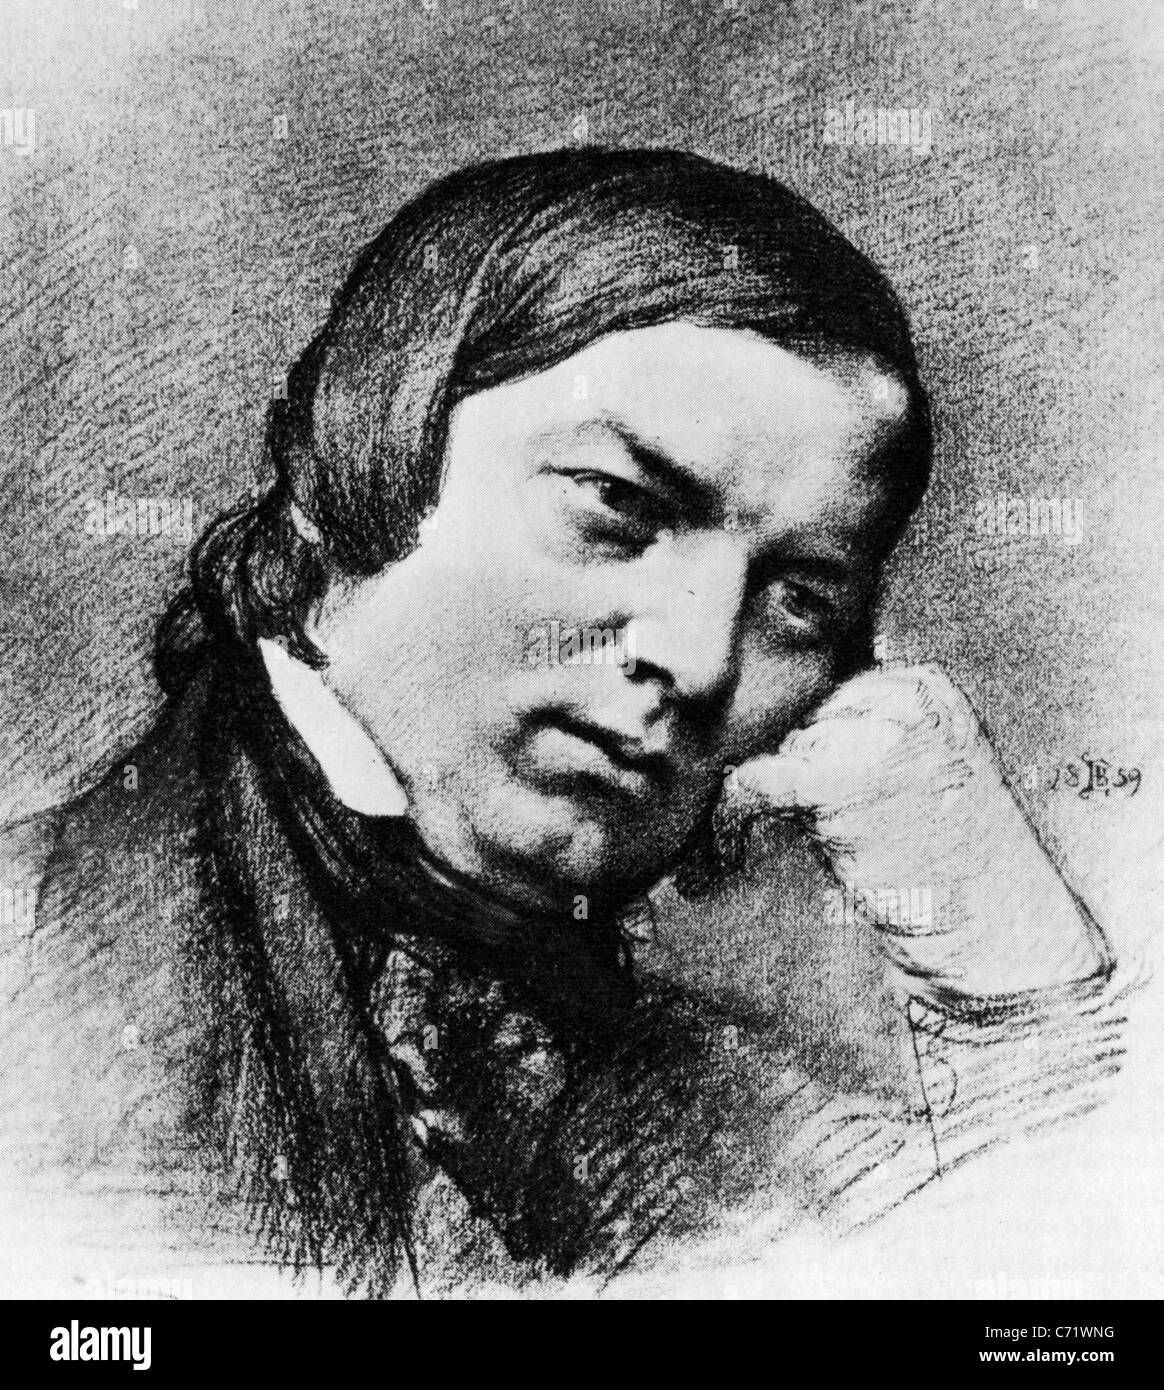 ROBERT Schumann (1810-1856) le compositeur classique allemand dans un dessin de 1859 basée sur une photographie Banque D'Images